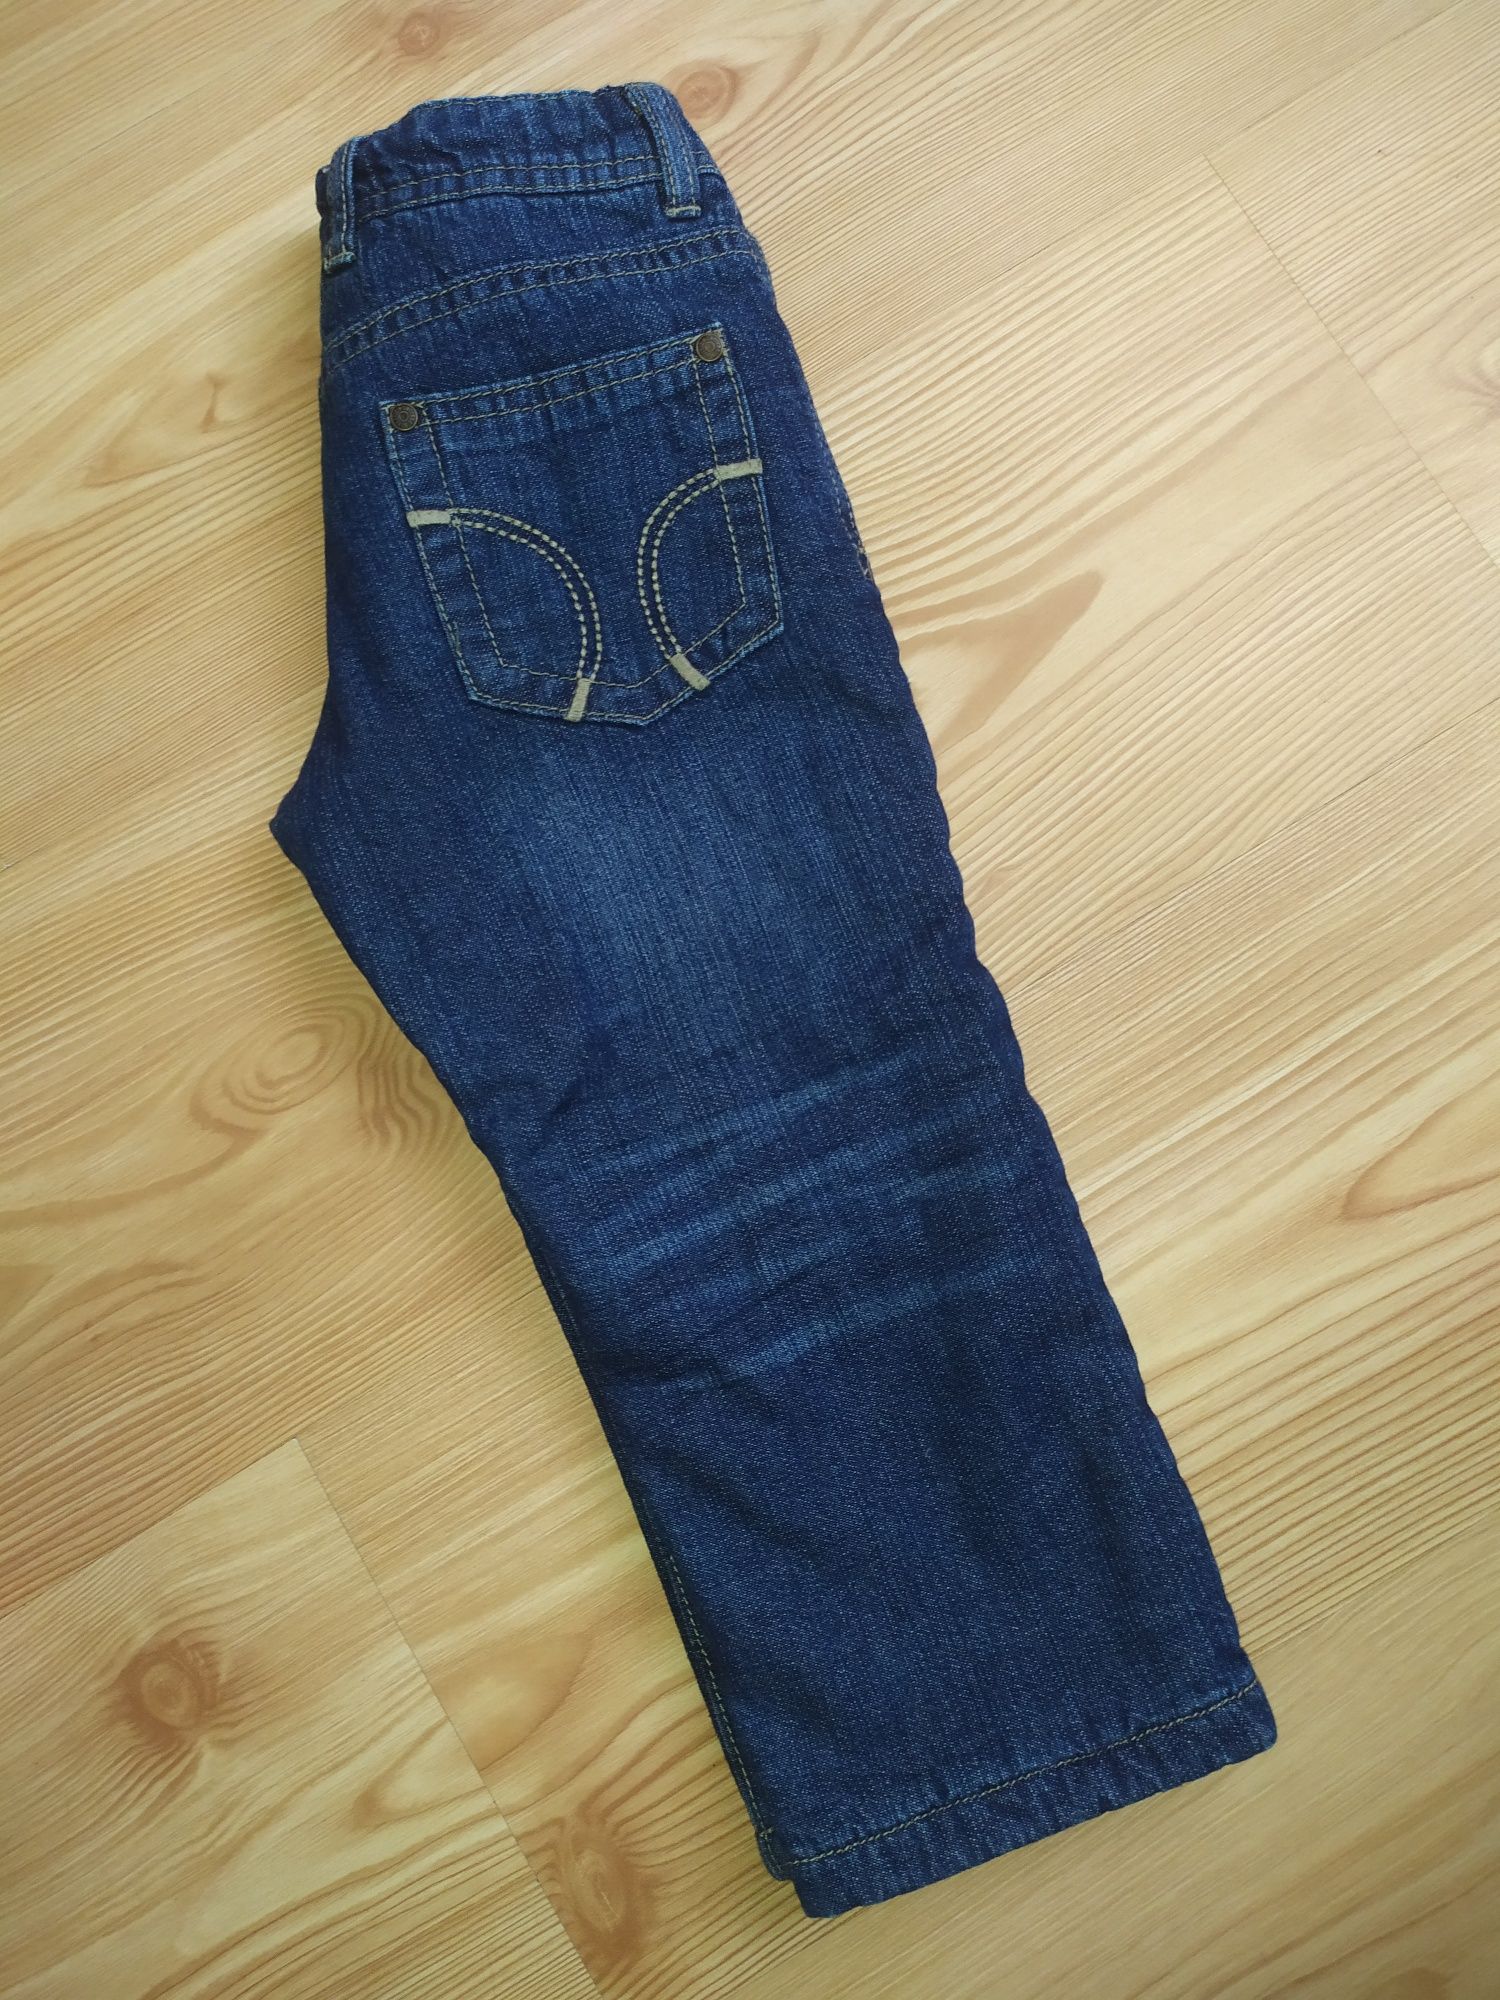 Spodnie jeansowe na polarze, rozmiar 86/92